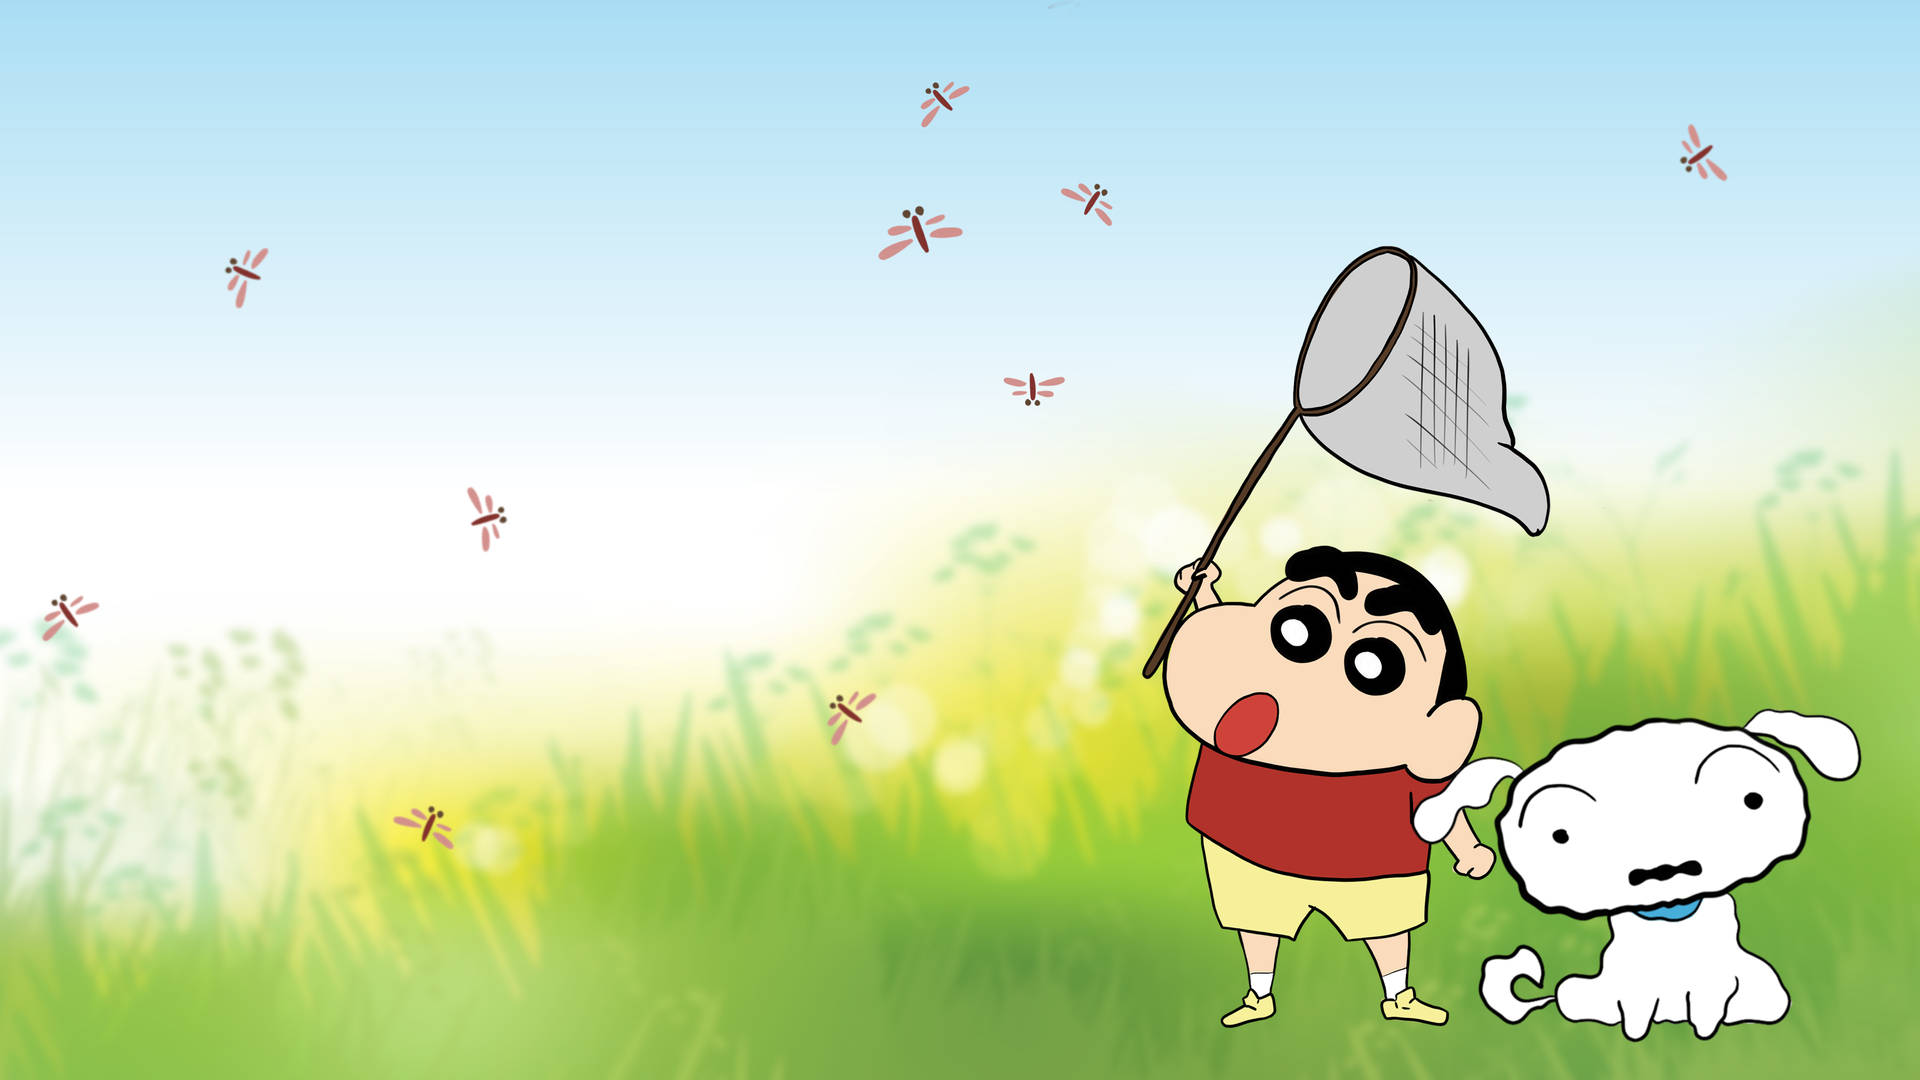 Free Shin Chan Cartoon Wallpaper Downloads, [200+] Shin Chan Cartoon  Wallpapers for FREE 